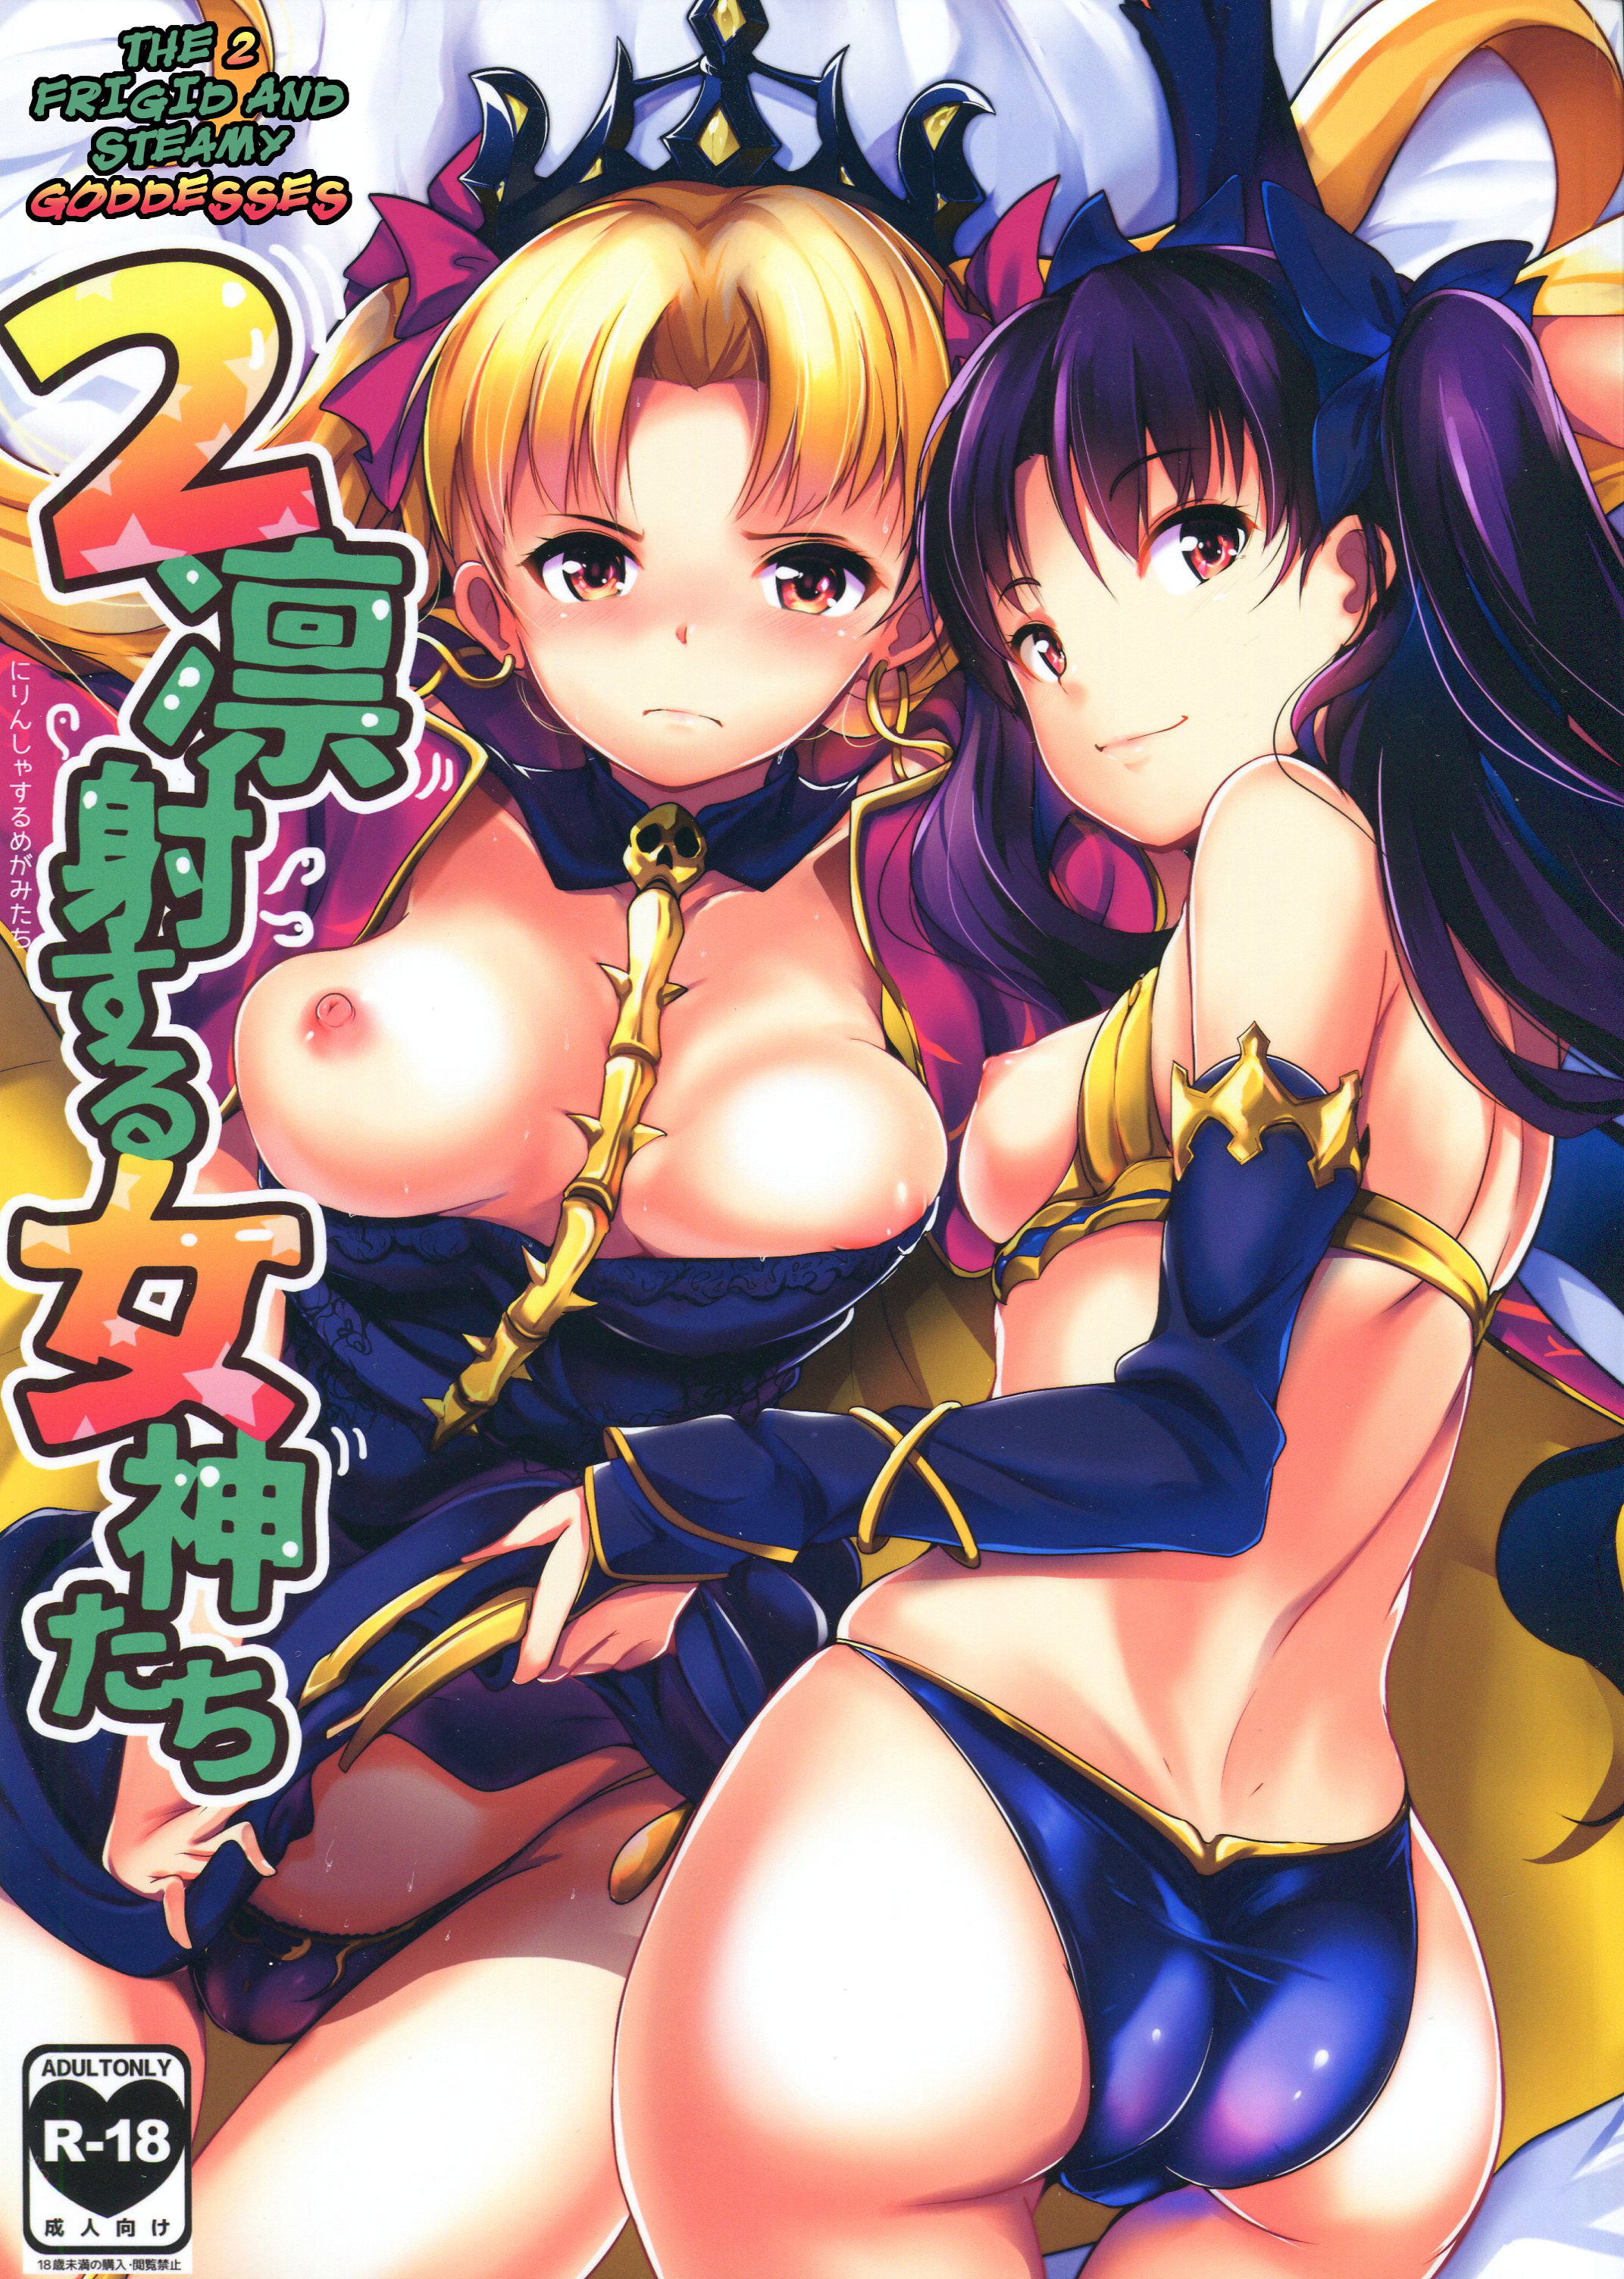 Muneshiro - The 2 Frigid and Steamy Goddesses Hentai Comics